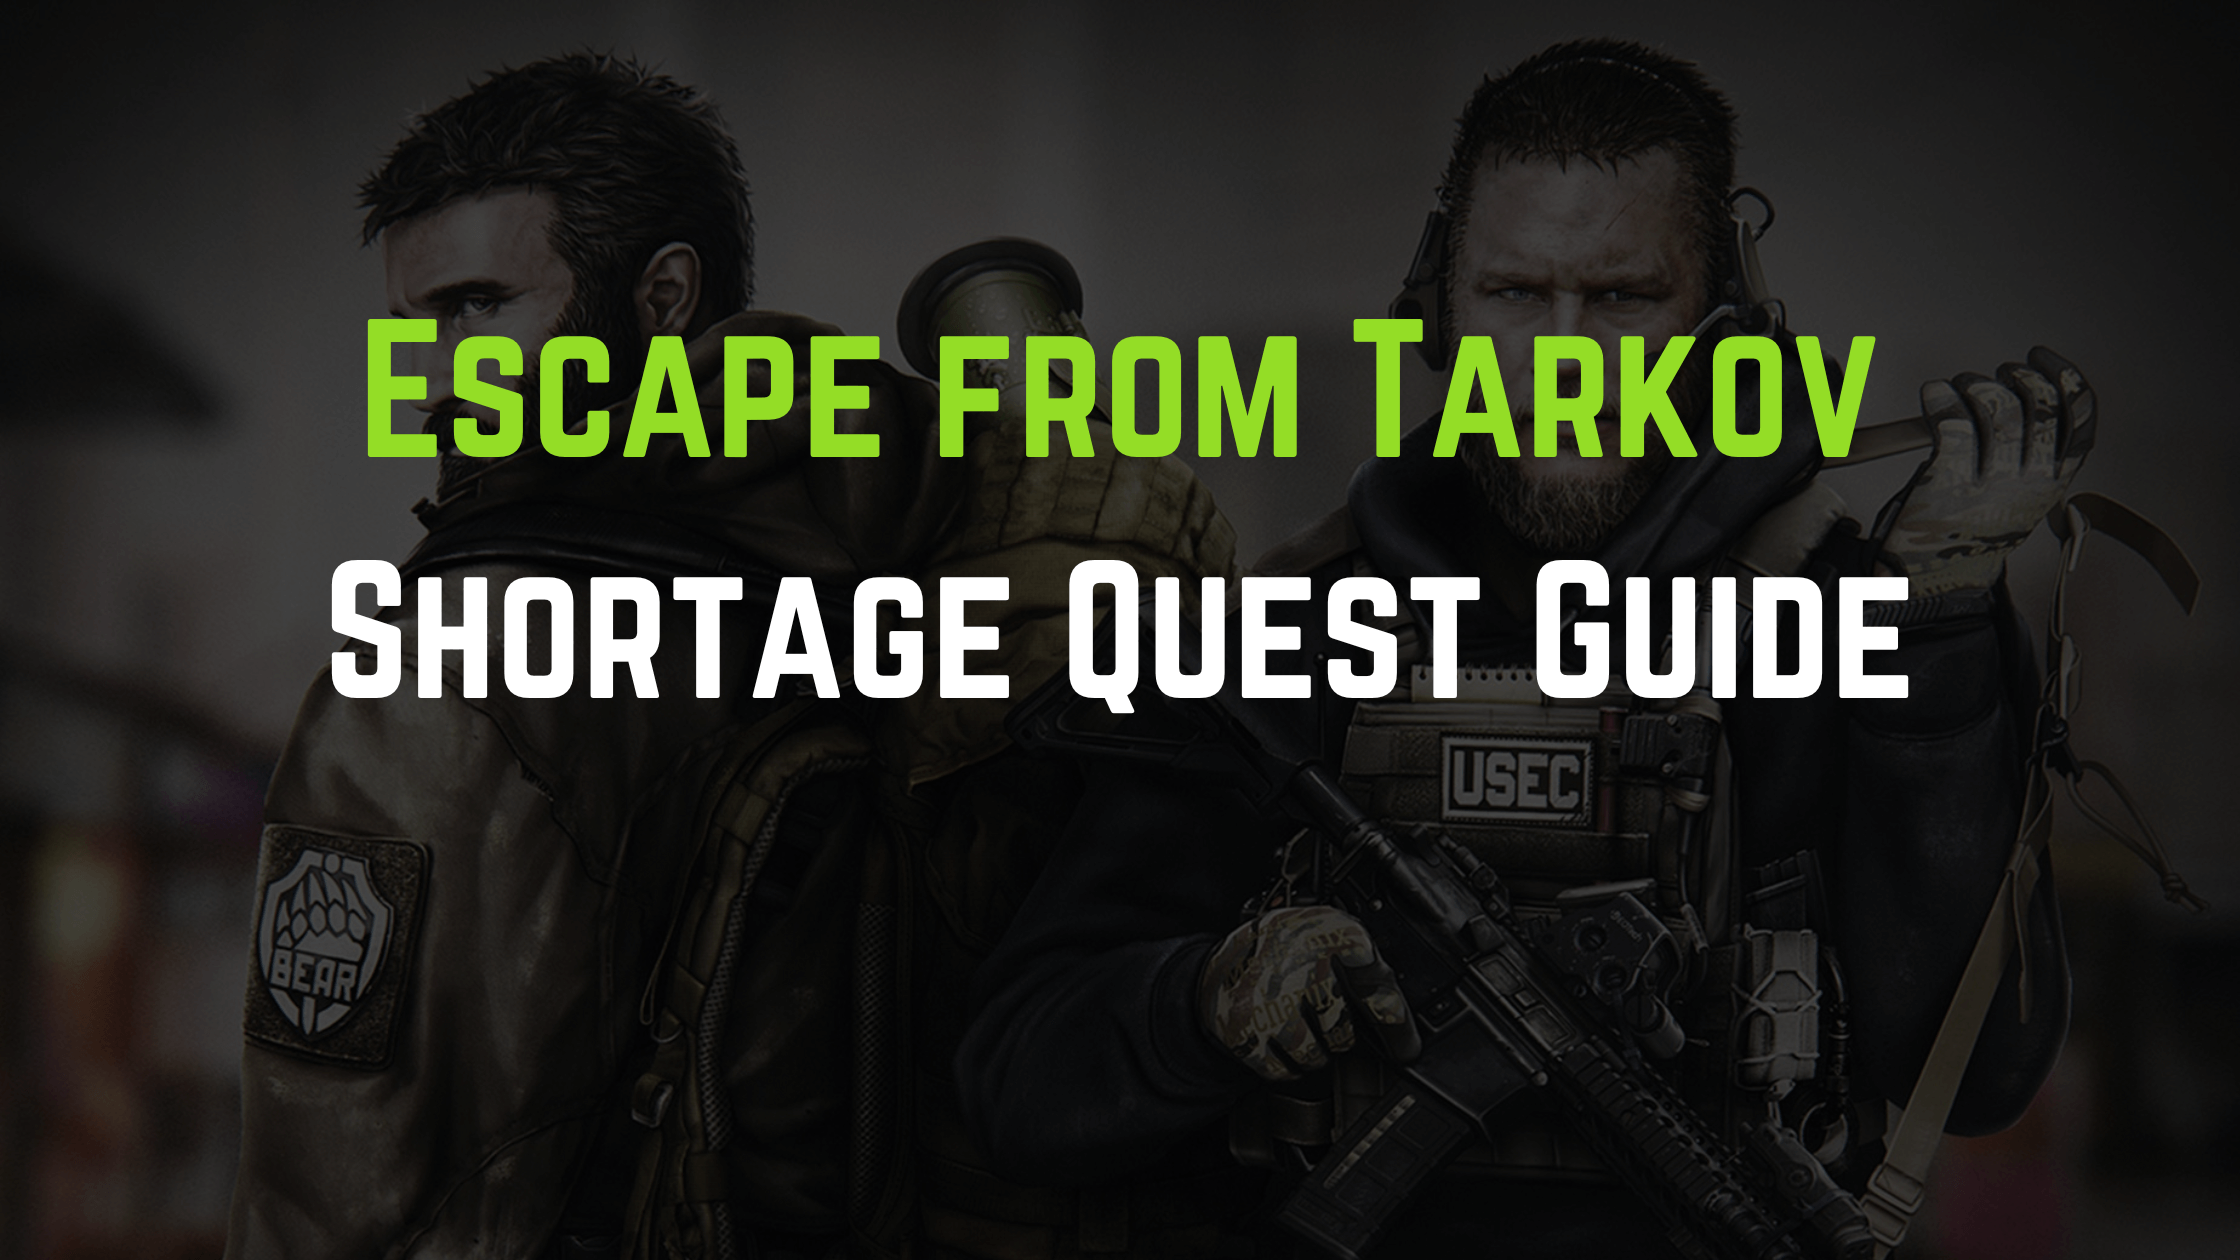 Escape from Tarkov Shortage Quest Guide